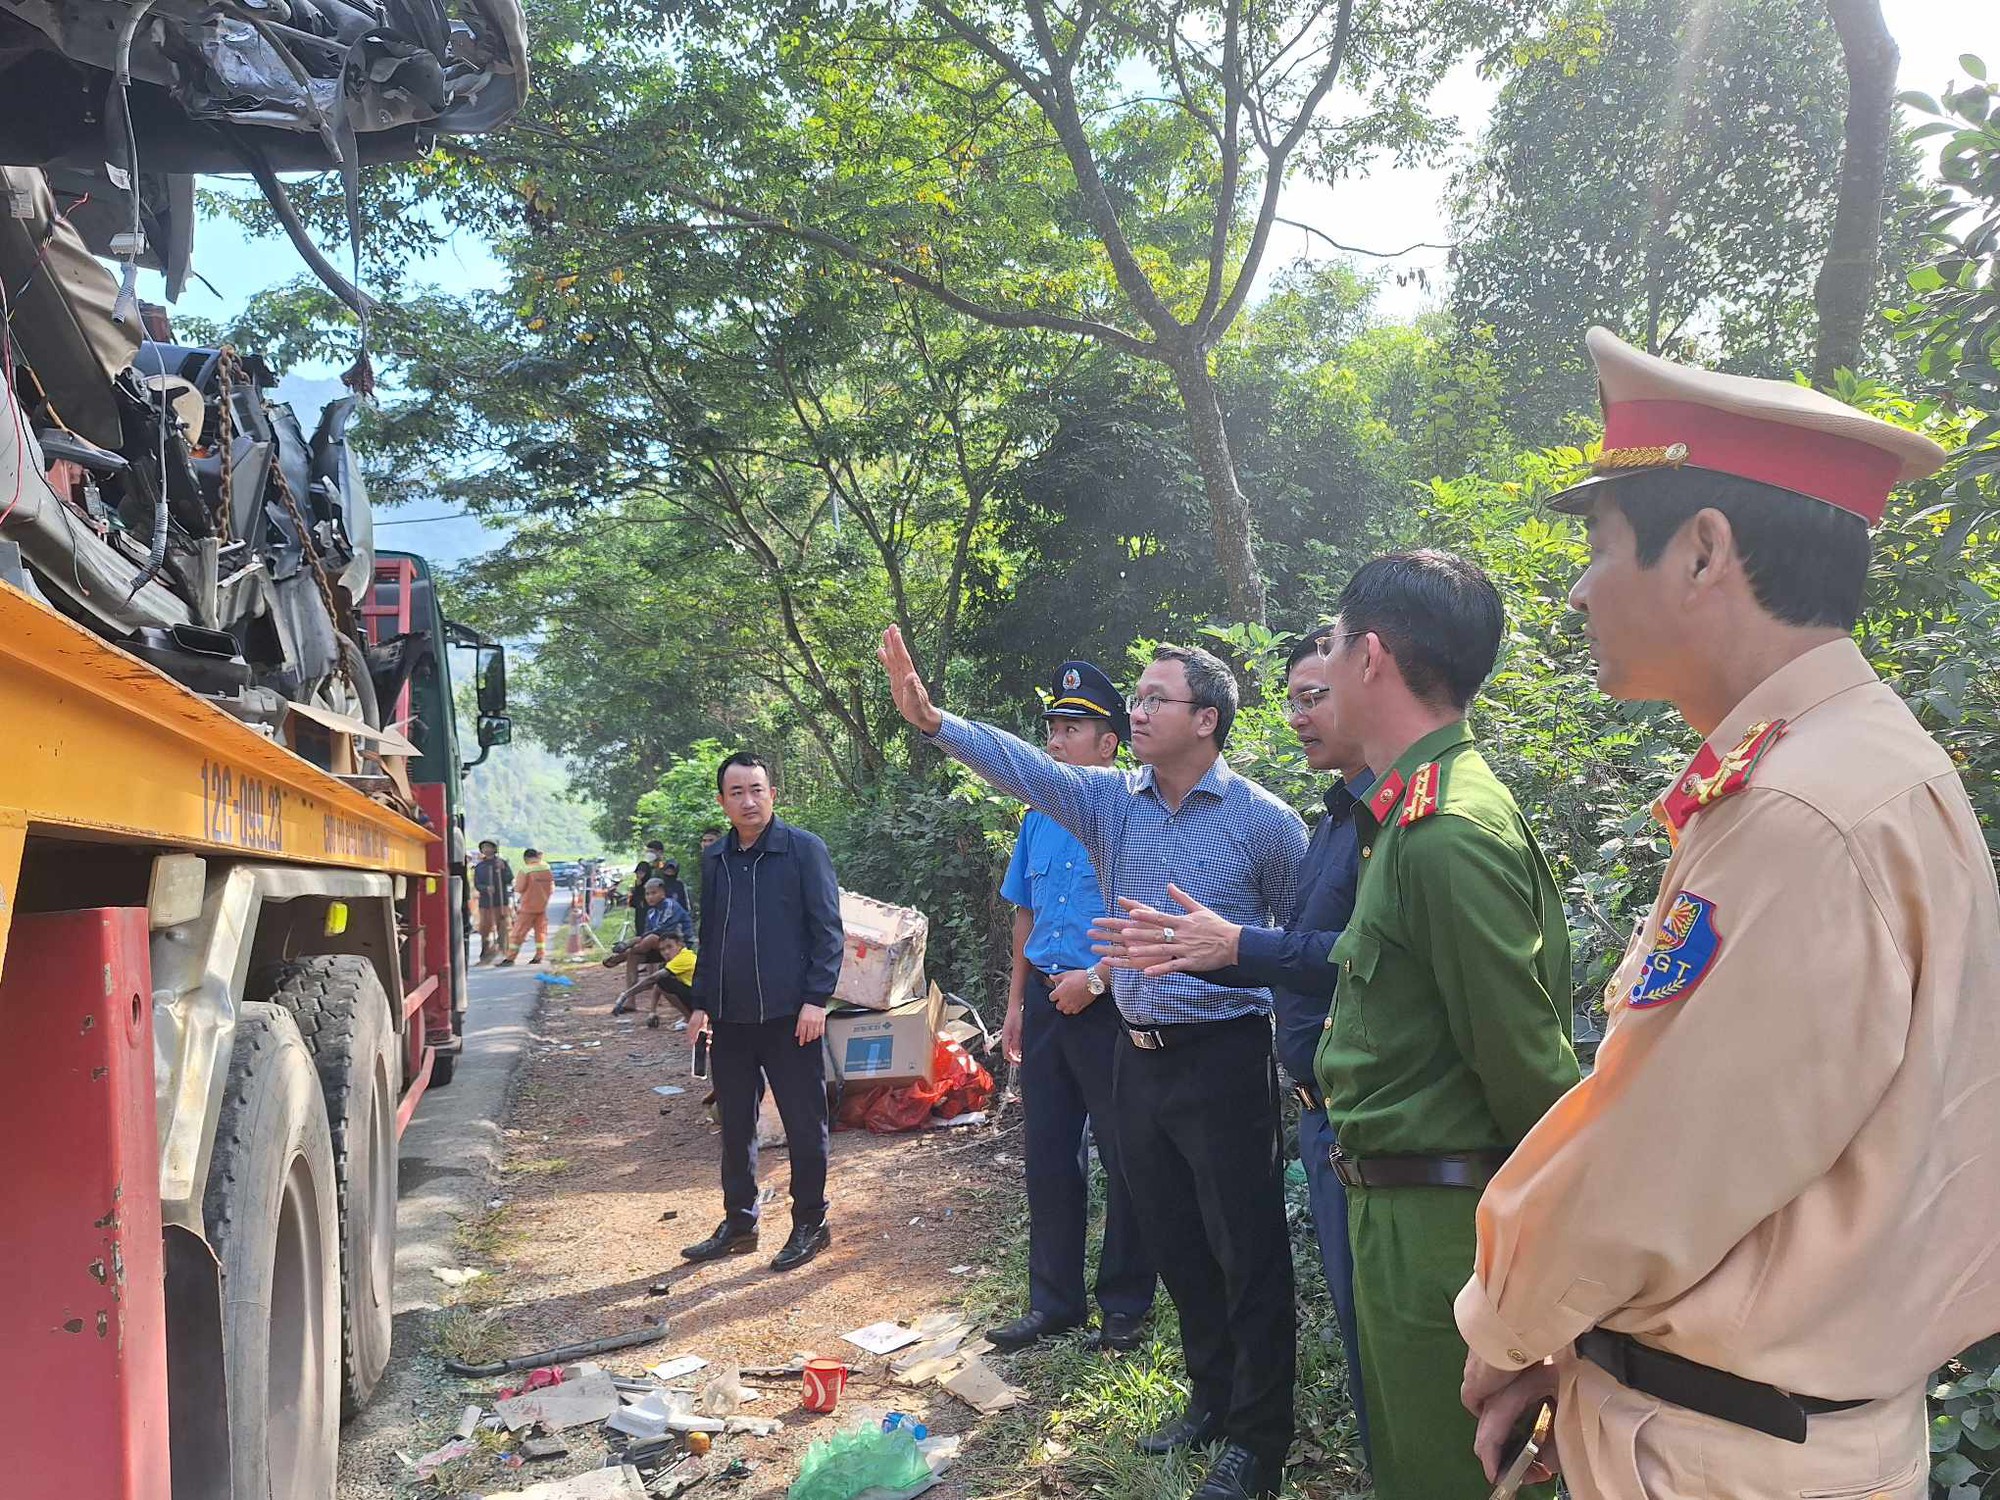 Nguyên nhân vụ tai nạn xe khách làm 5 người chết, 11 người bị thương ở Lạng Sơn - Ảnh 1.